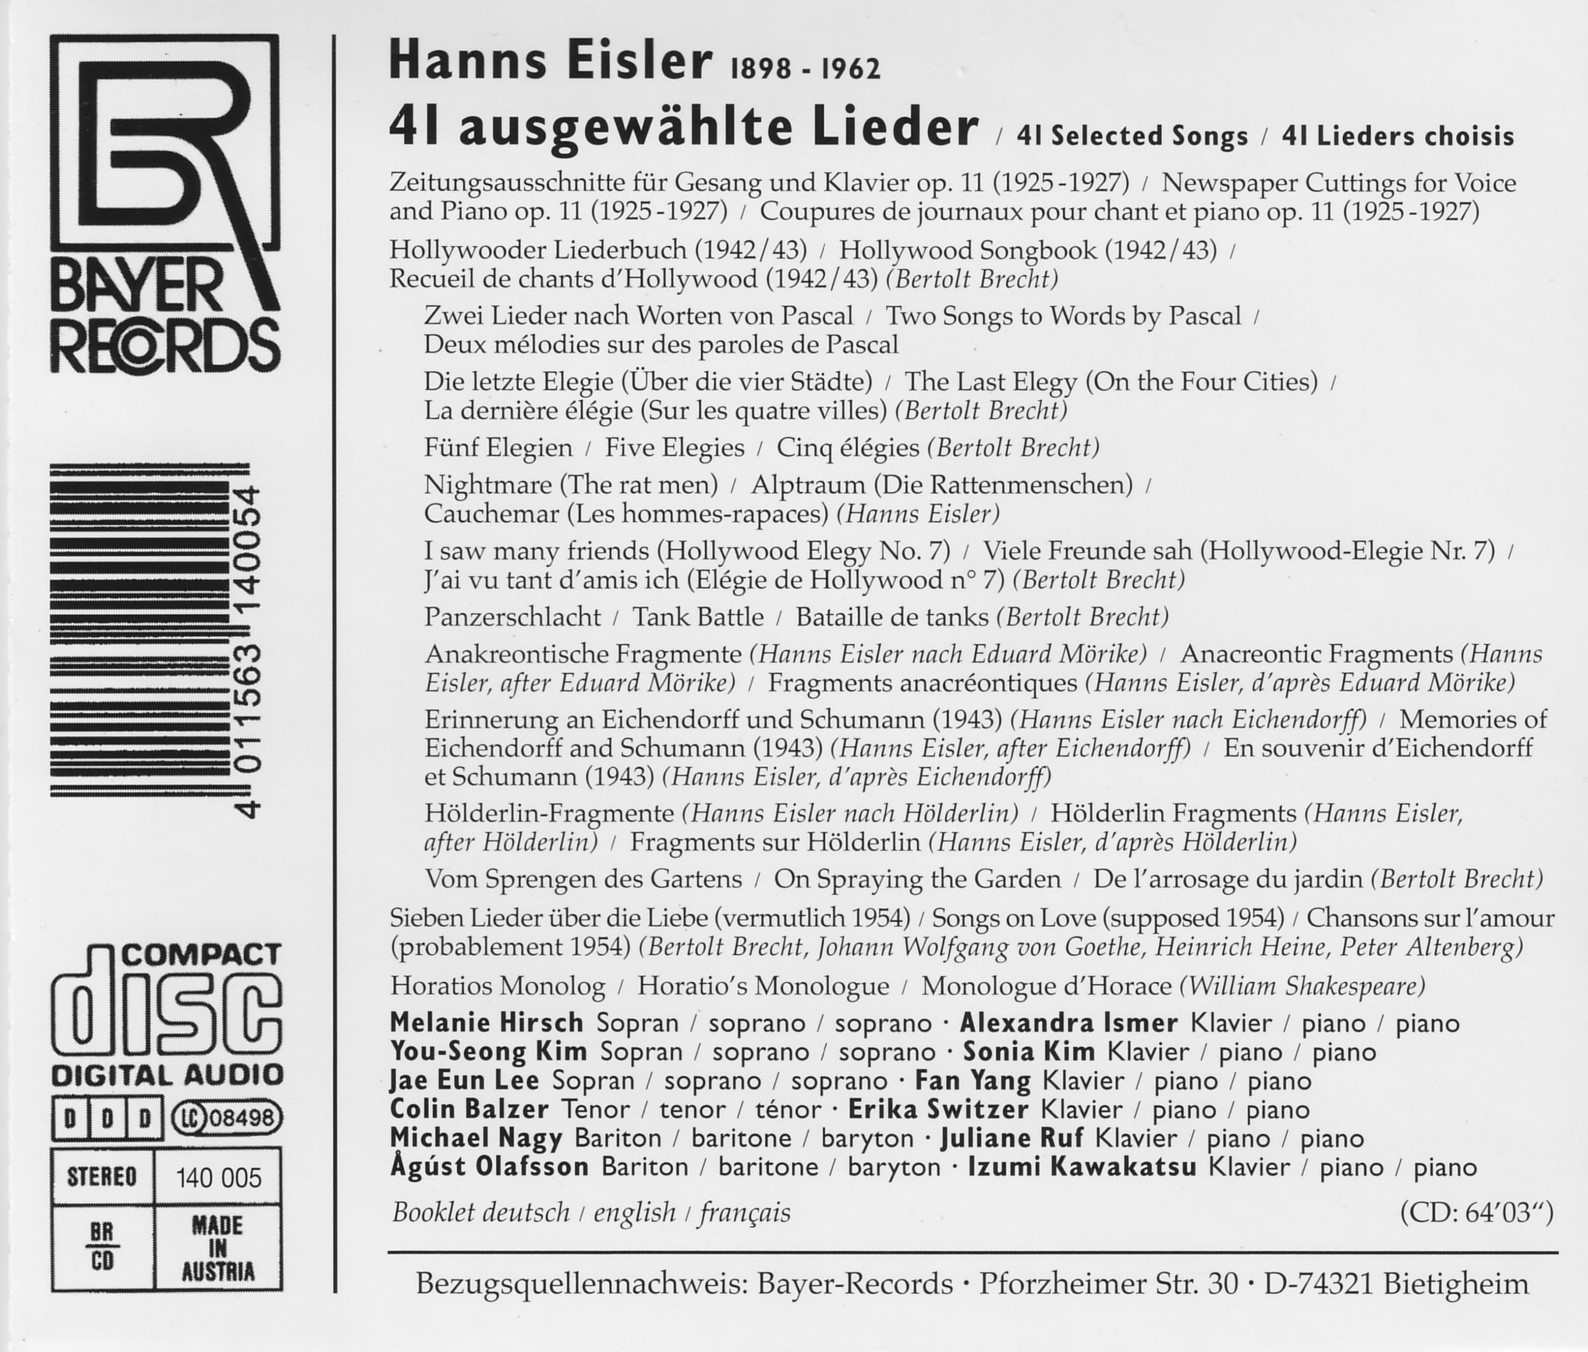 Hanns Eisler - 41 ausgewählte Lieder